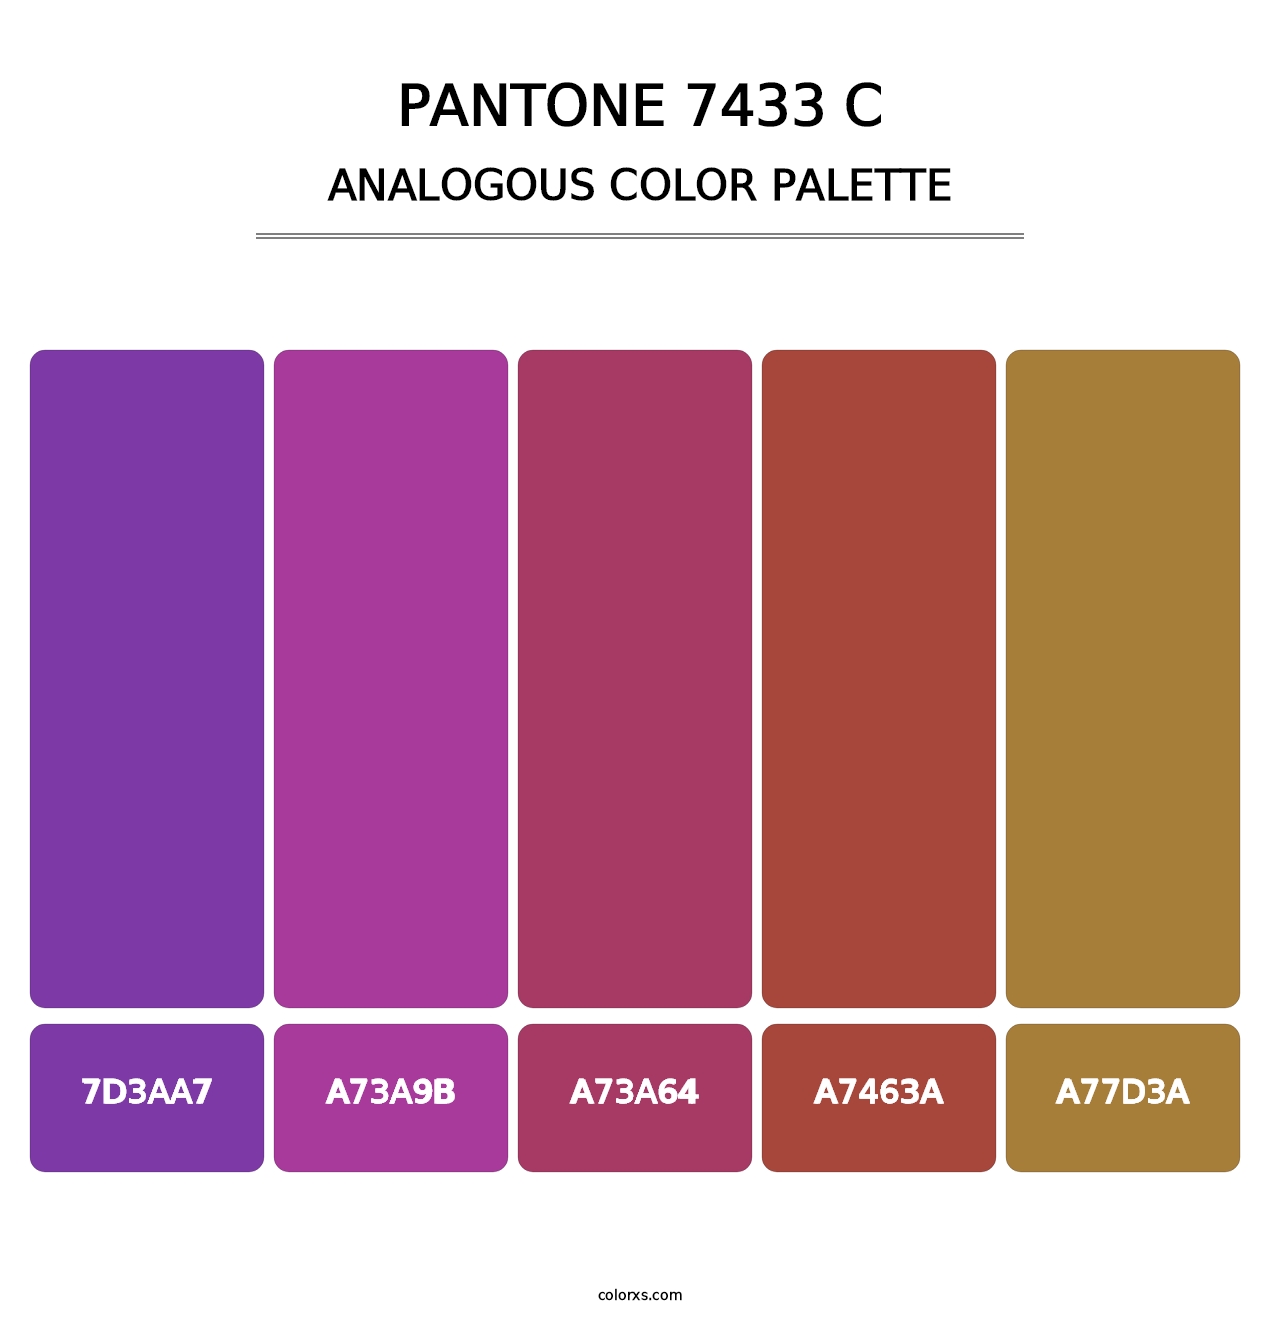 PANTONE 7433 C - Analogous Color Palette